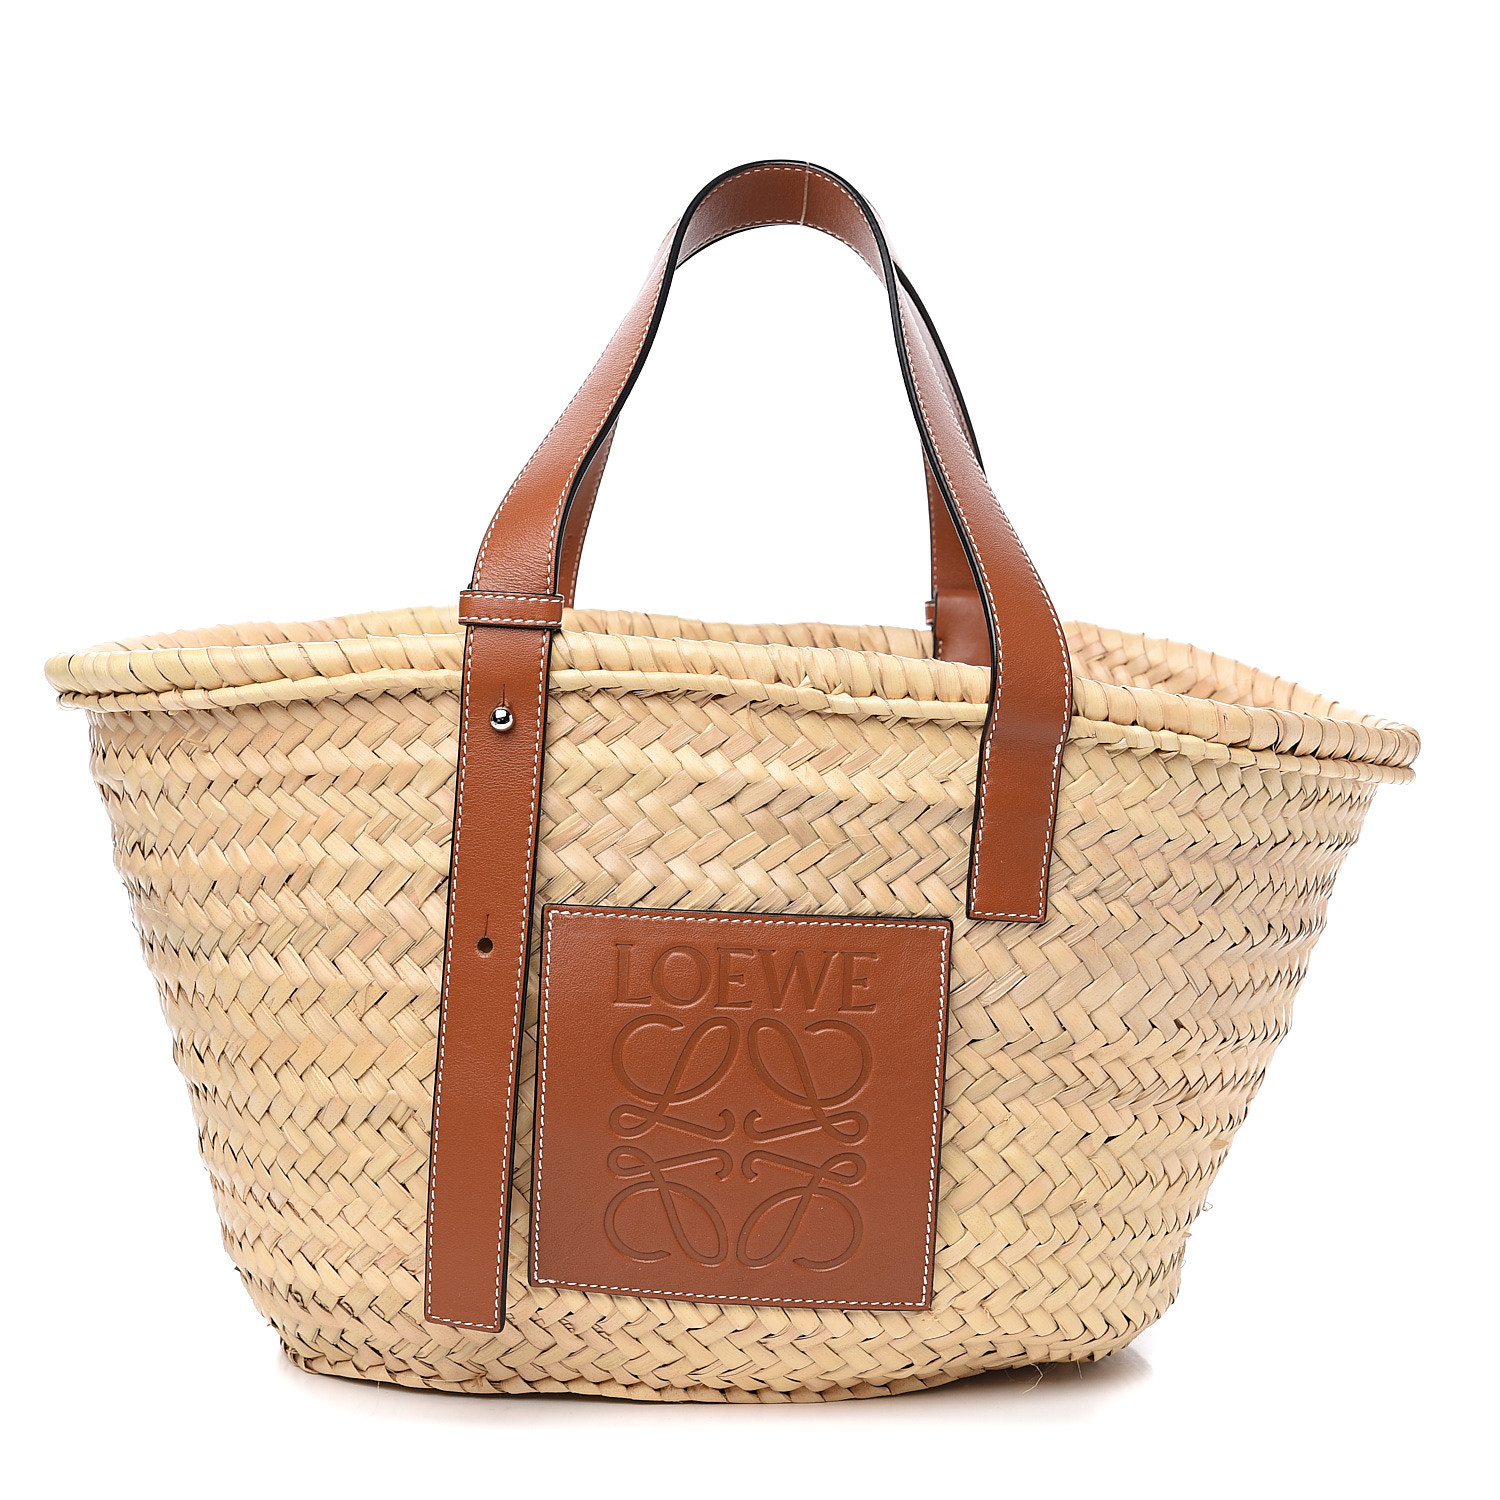 LOEWE Raffia Basket Tote Bag Natural Tan 575014